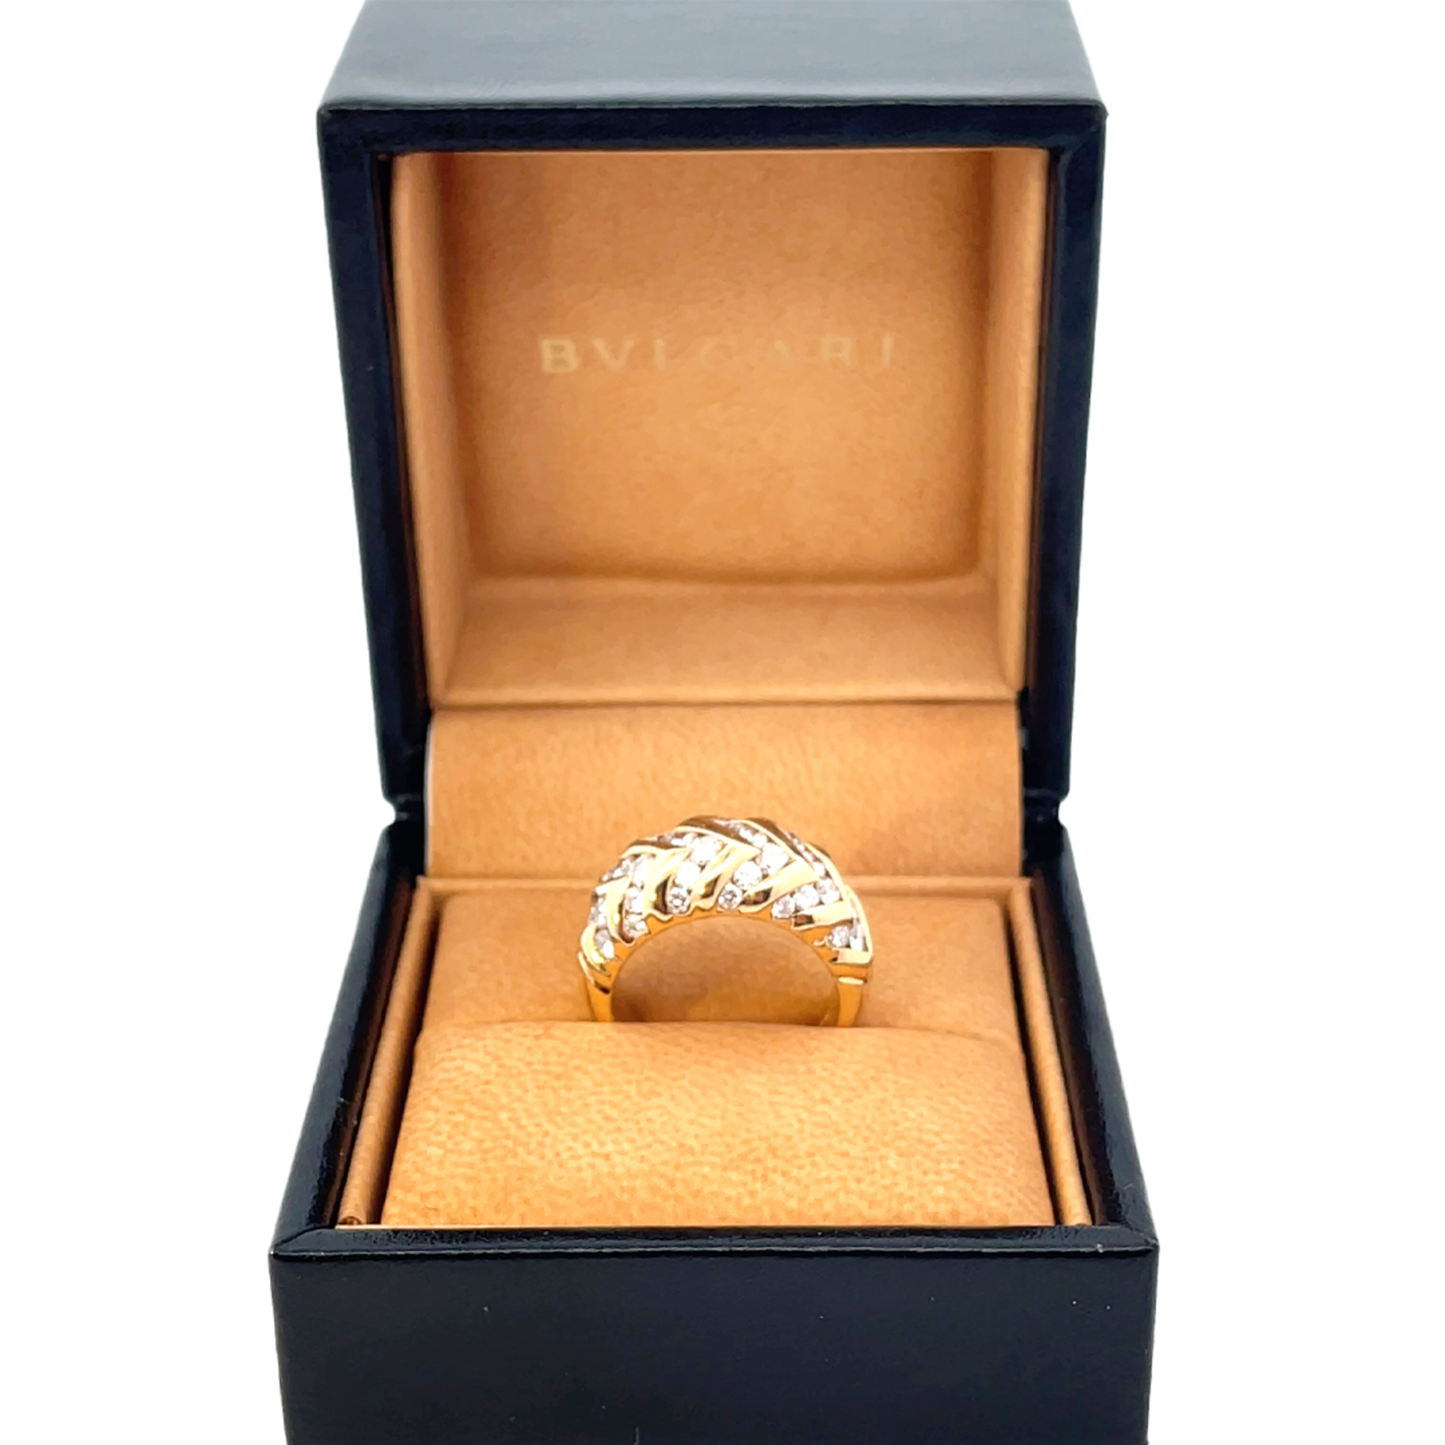 Bulgari 1980s 18KT Yellow Gold Diamond Spiga Ring in original box